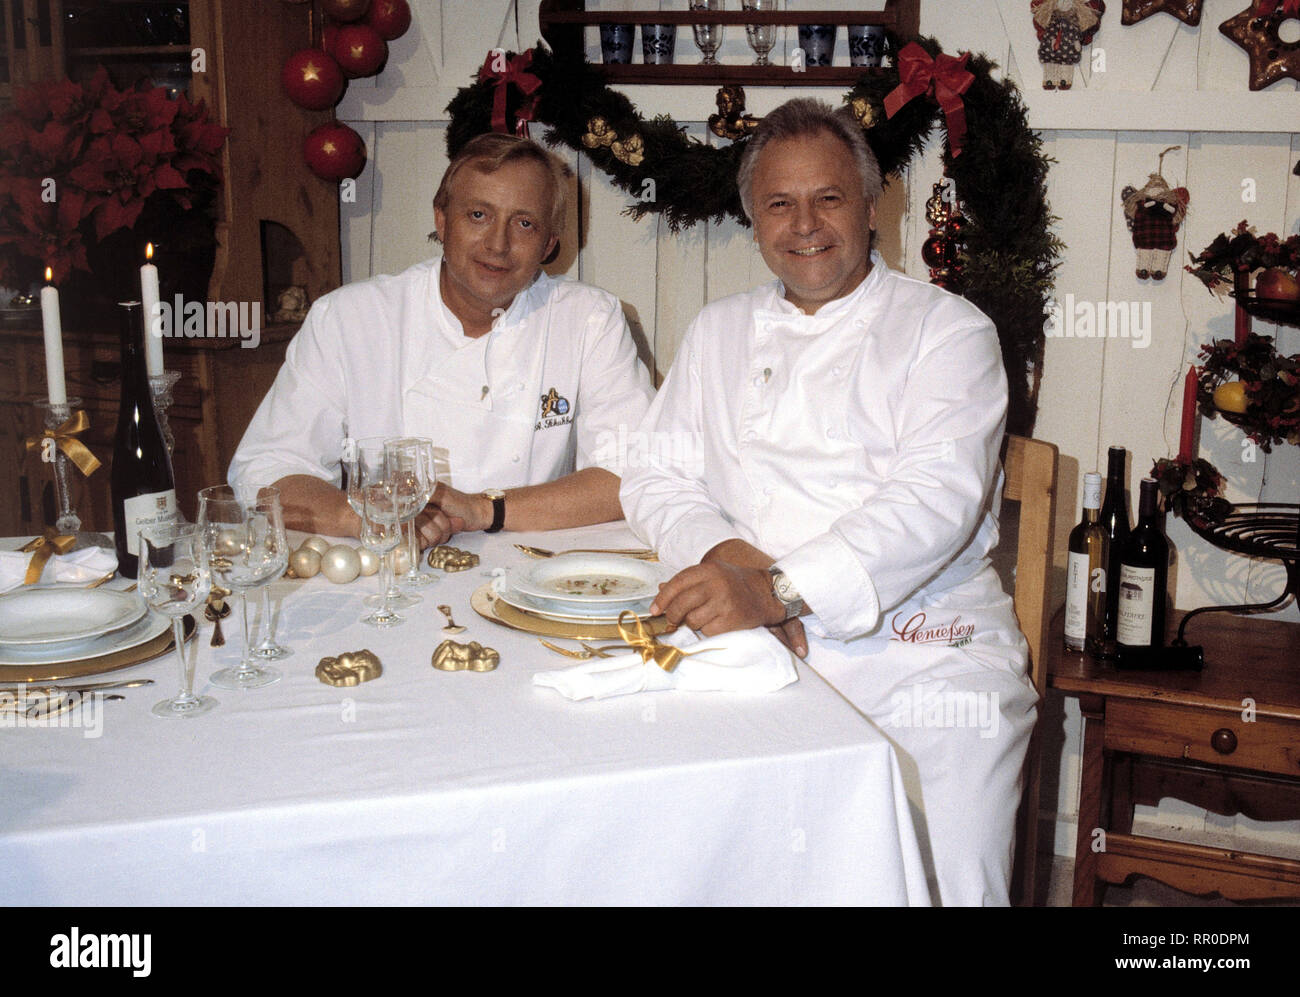 GENIESSEN ERLAUBT / Das Weihnachtsmenü / D 1996 / mit ALFONS SCHUHBECK und ECKART WITZIGMANN / Überschrift: GENIESSEN ERLAUBT / D 1996 Stock Photo